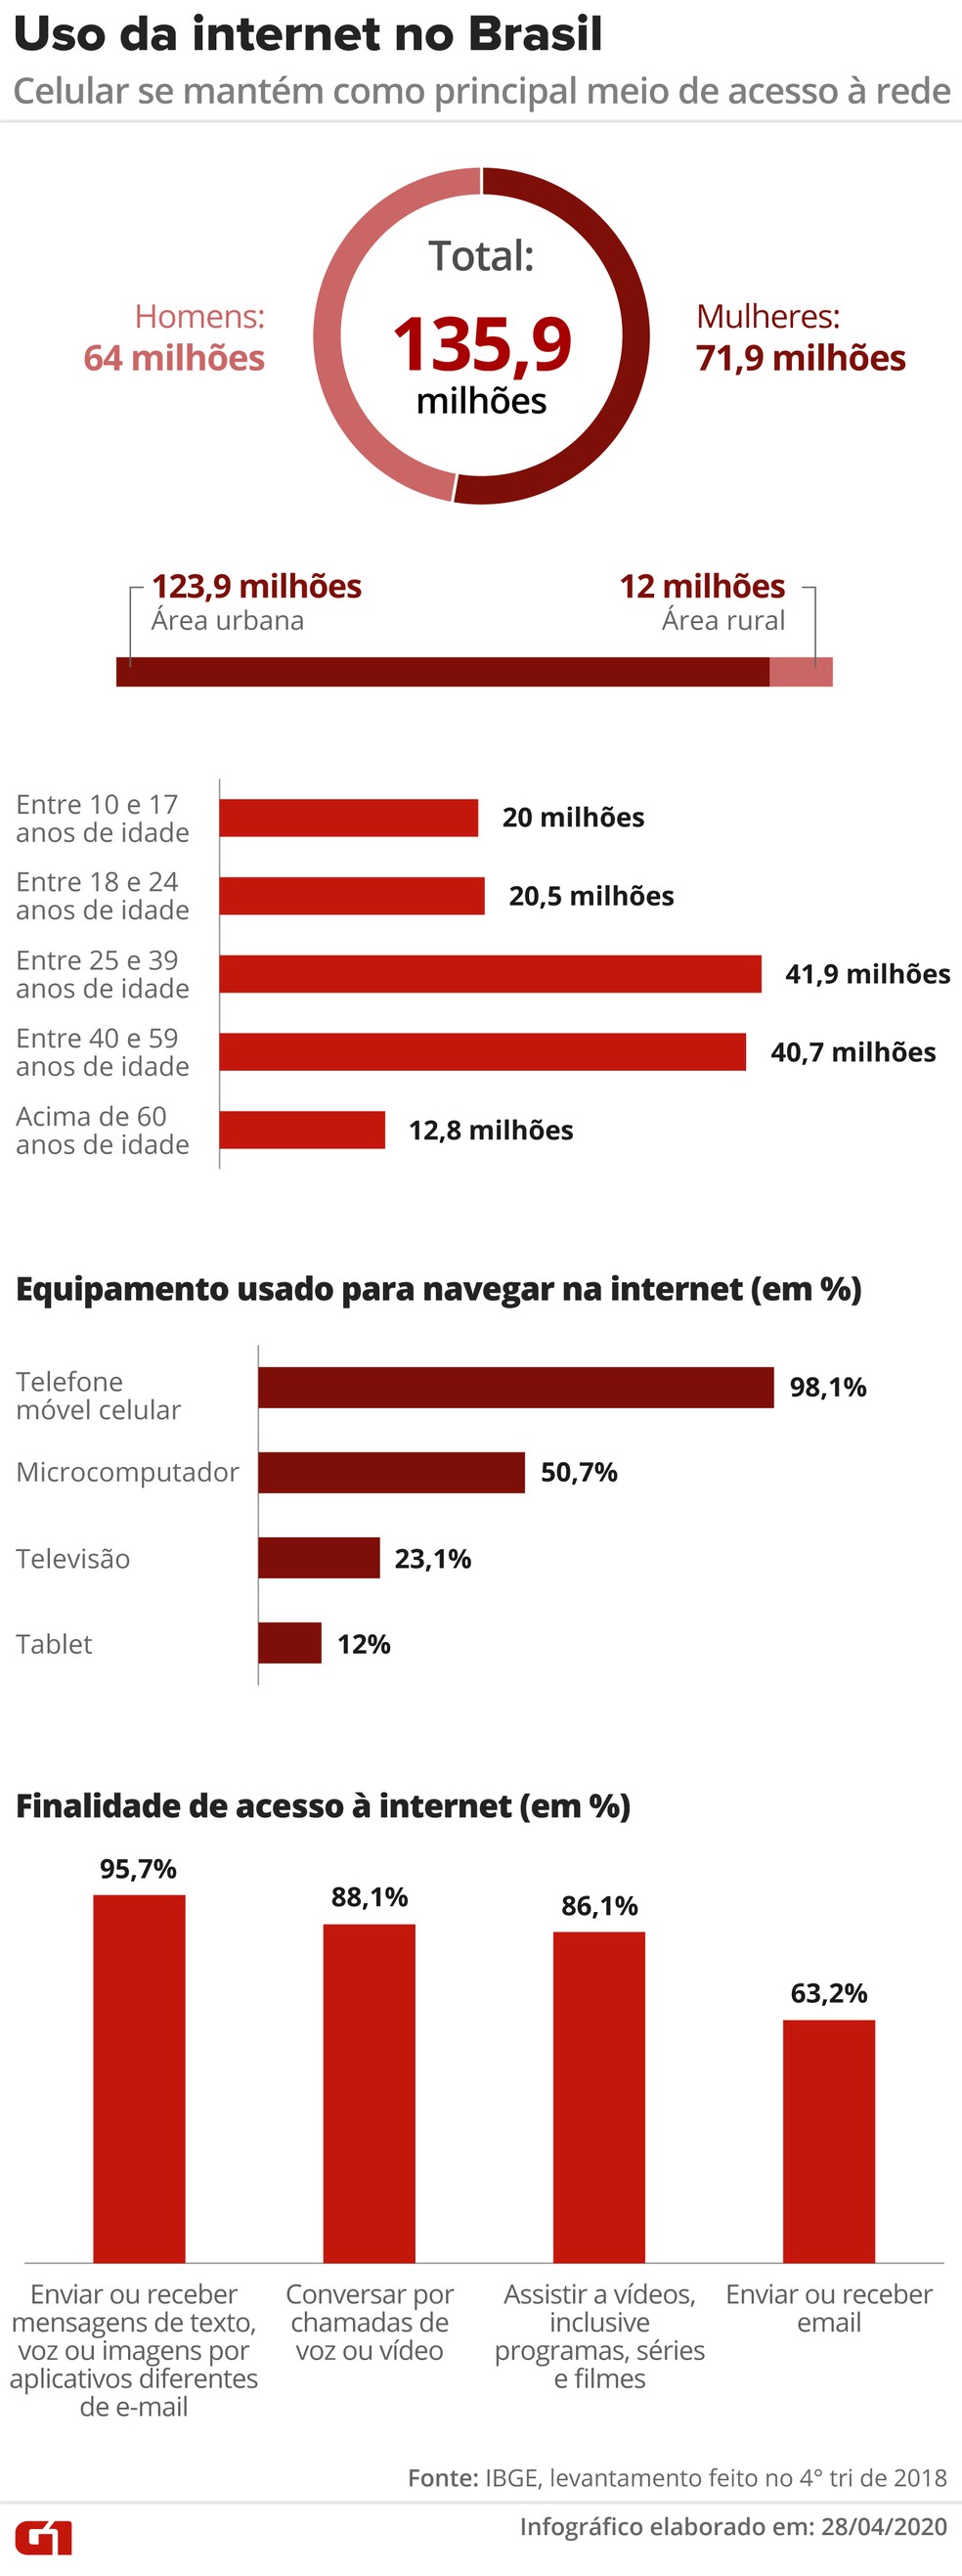 G1 - Brasil perde 22,9 milhões de linhas de celular em 2015